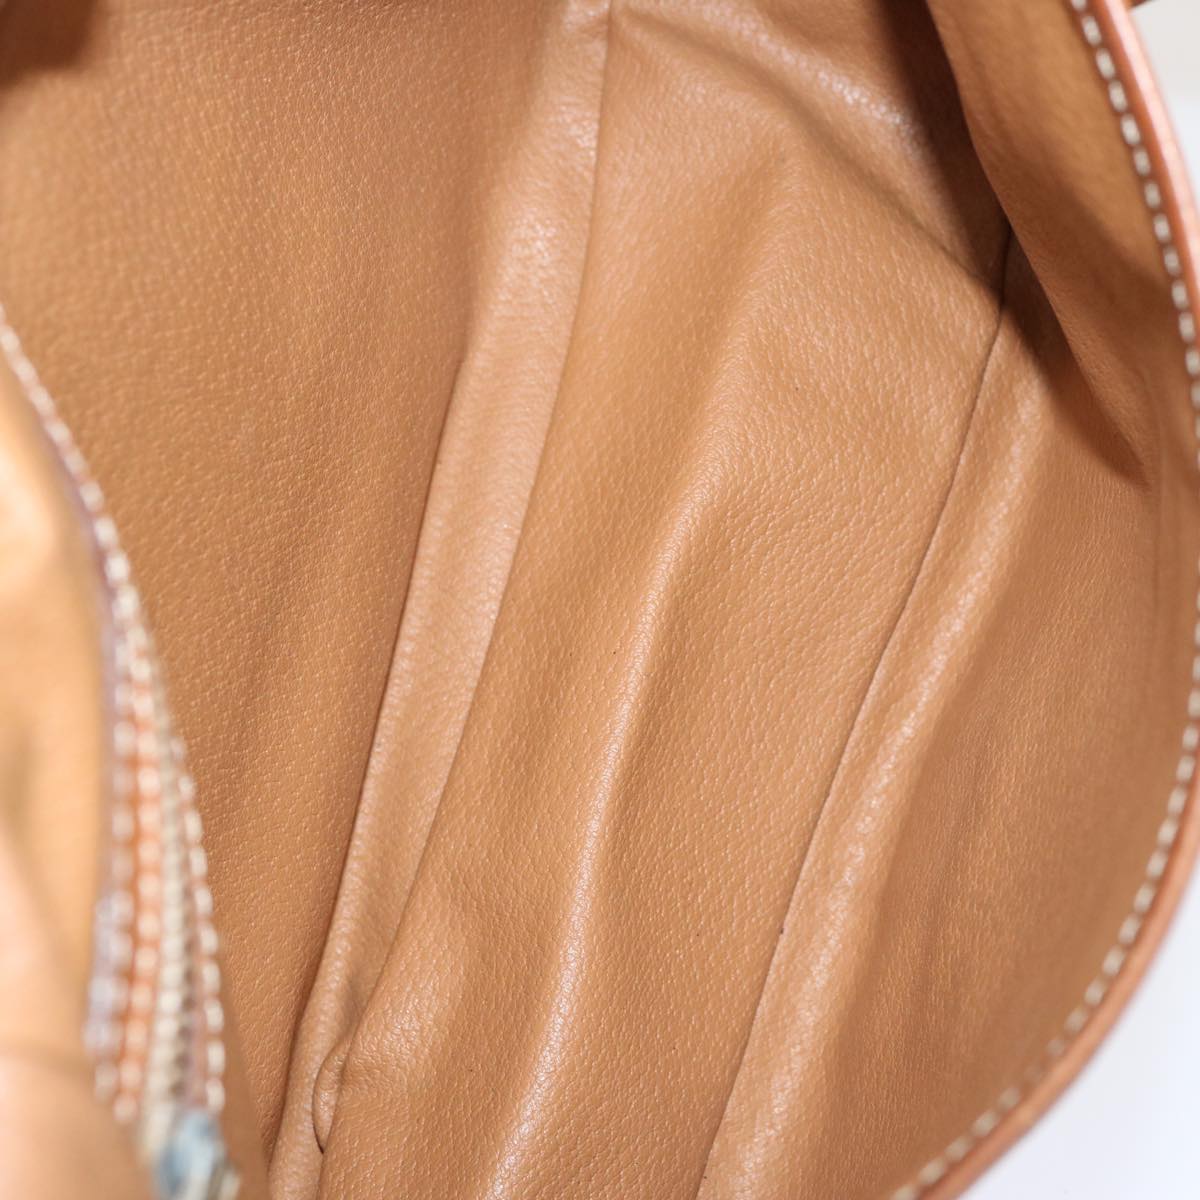 CELINE Macadam Canvas Shoulder Bag PVC Brown Auth 70829